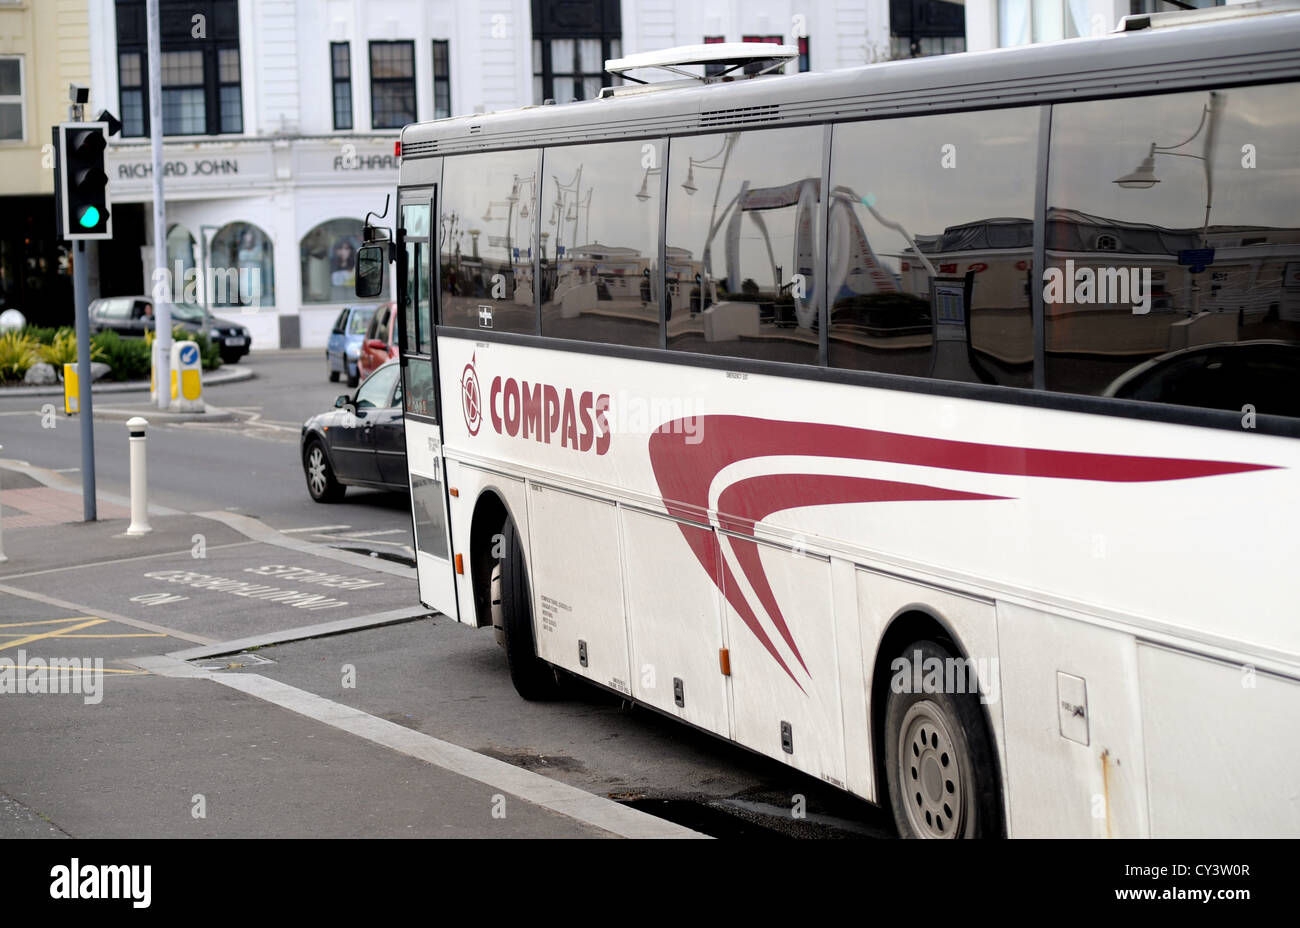 Compass bus company vehicle Worthing UK Stock Photo